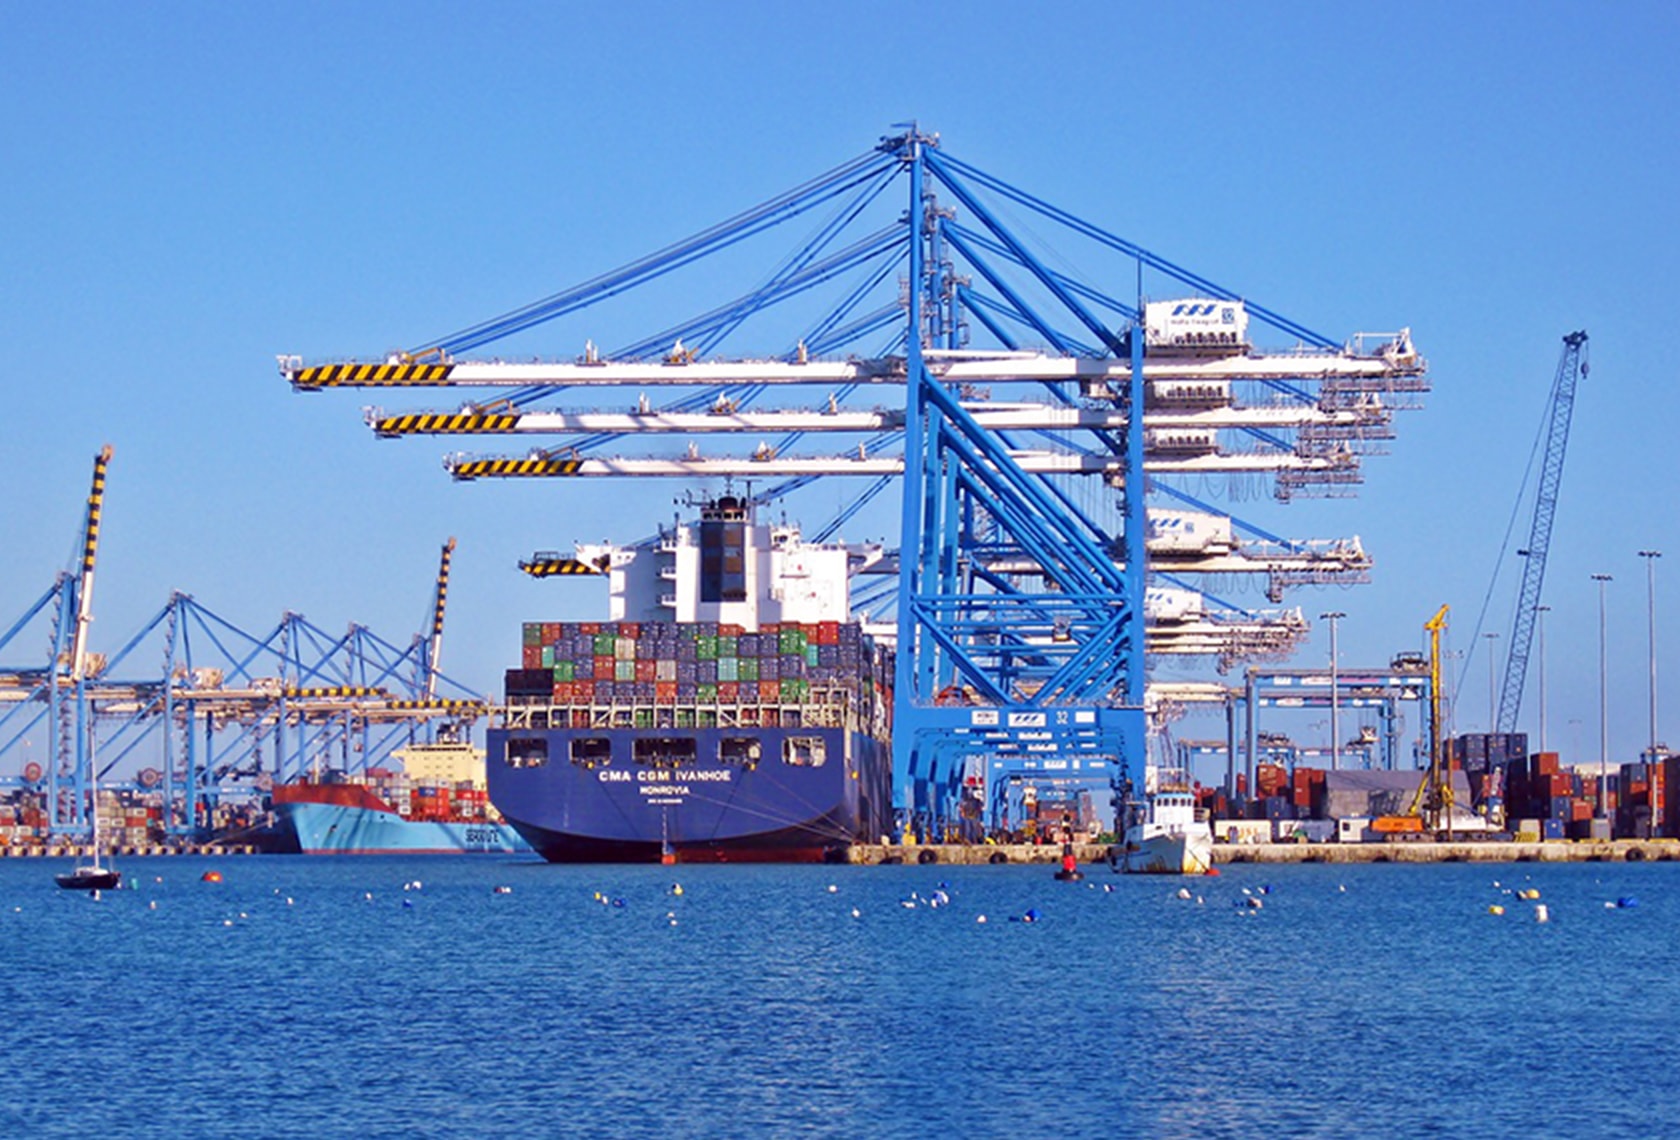 貿易についてわかりやすく解説する記事中のイメージ画像です。港に停泊したコンテナ船の遠景です。